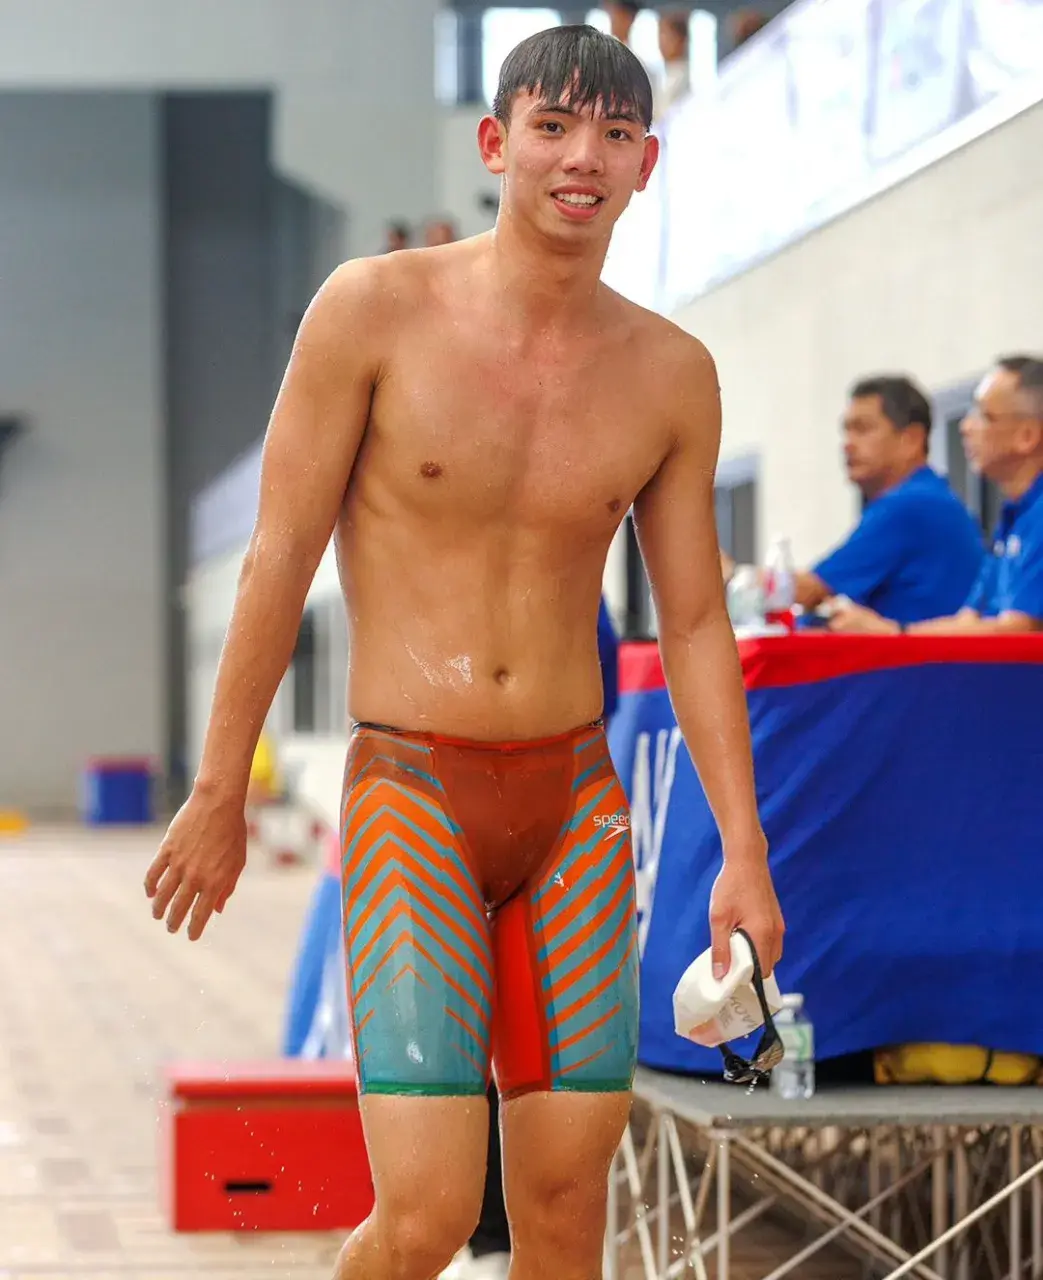 หนุ่มนักว่ายน้ำใสใส